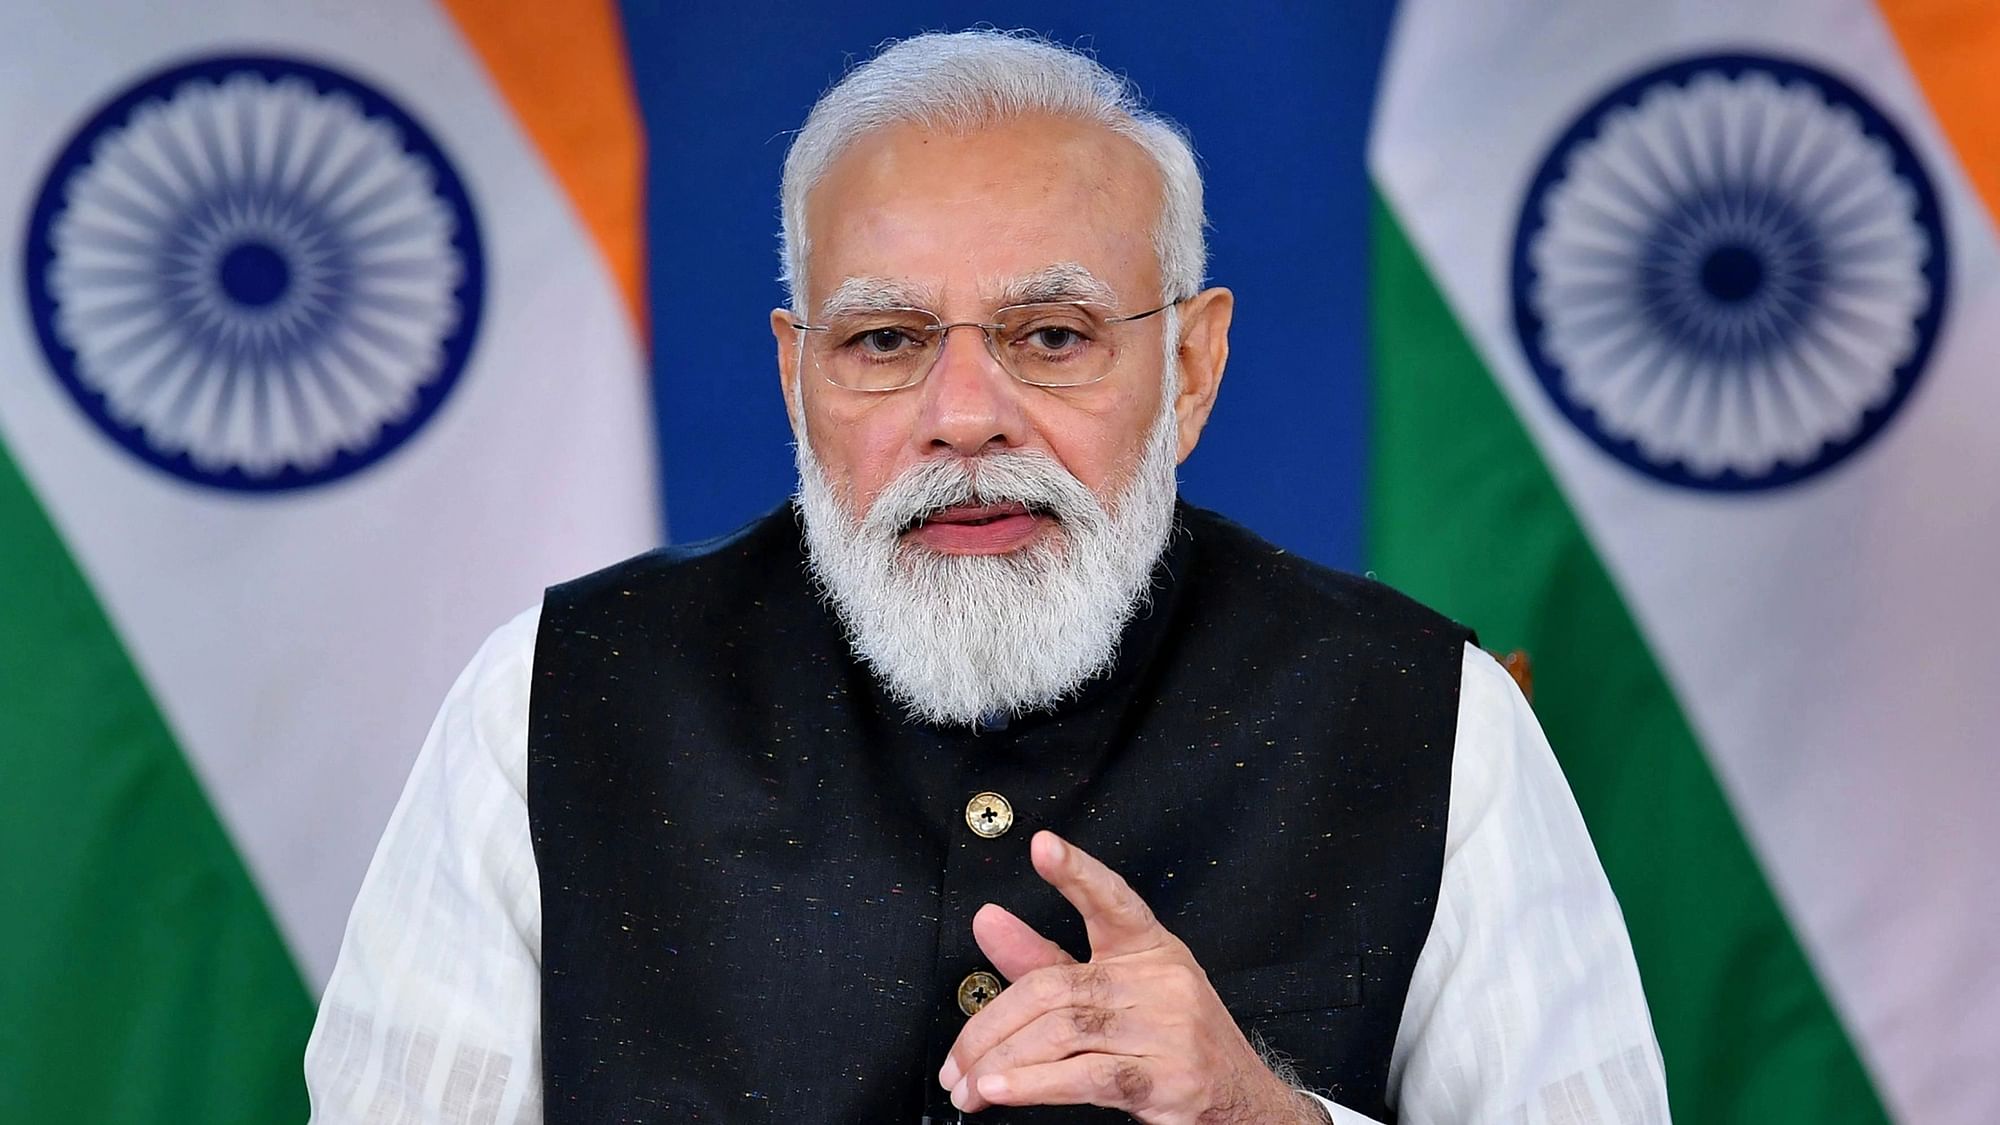 <div class="paragraphs"><p>PM Narendra Modi 23 जून को BRICS शिखर सम्मेलन में वर्चुअल रूप से शिरकत करेंगे</p></div>